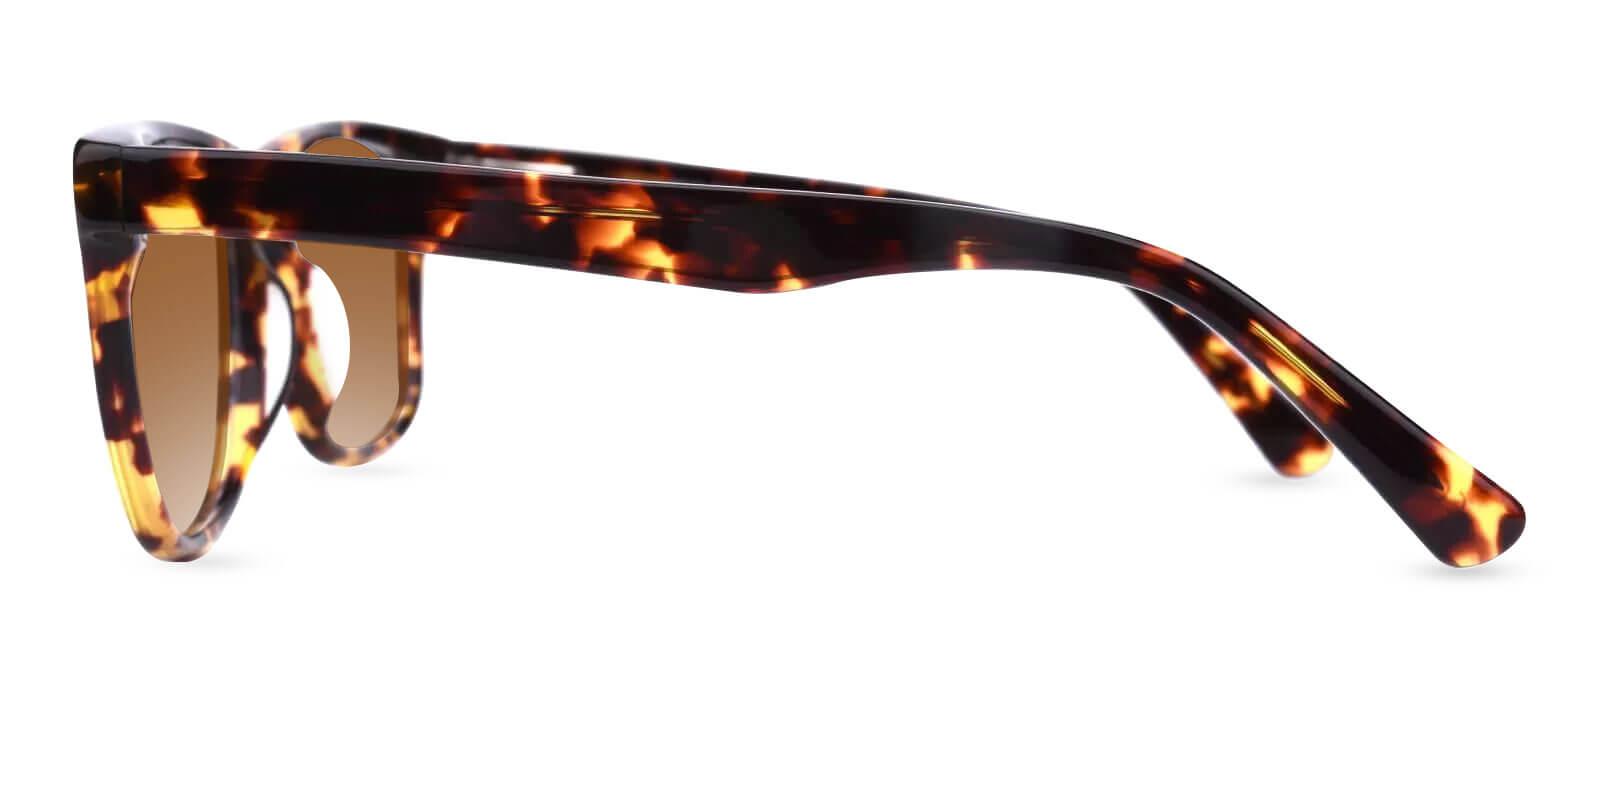 Hepburn Tortoise Acetate SpringHinges , Sunglasses , UniversalBridgeFit Frames from ABBE Glasses